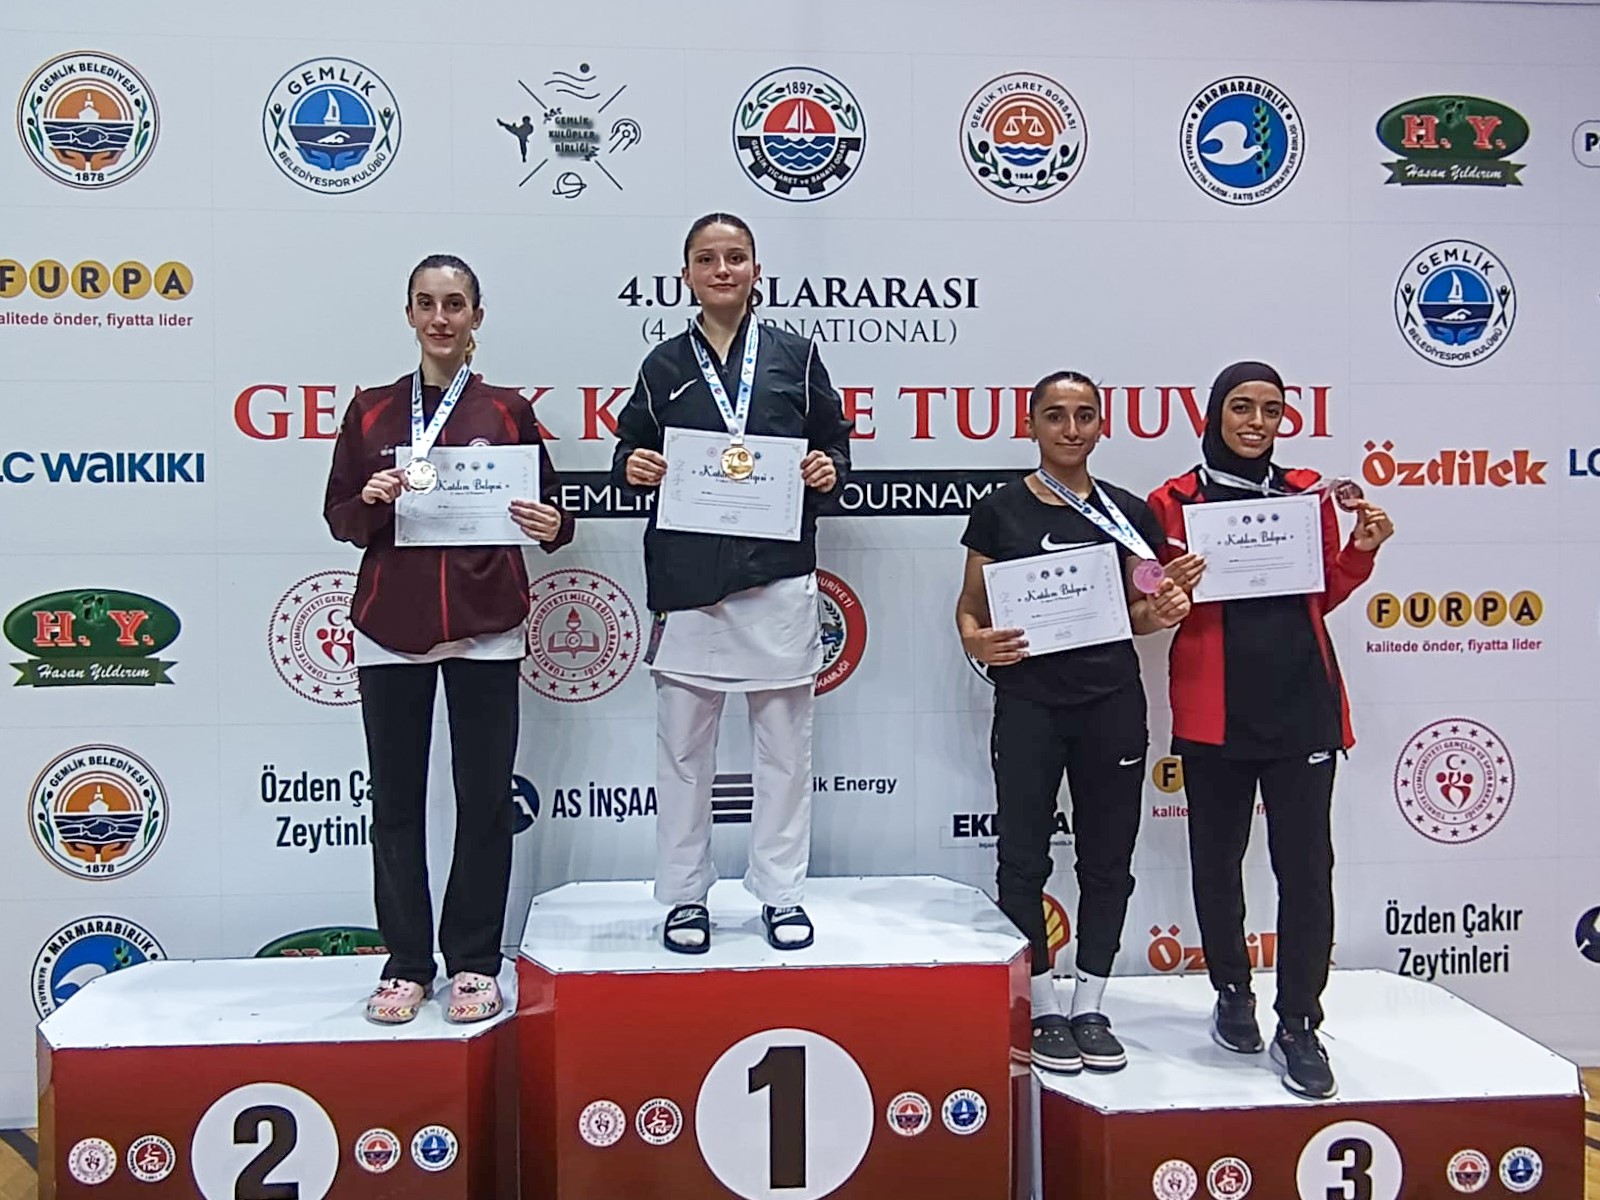 Diyarbakırlı sporcu uluslararası turnuvadan bronz madalyayla döndü